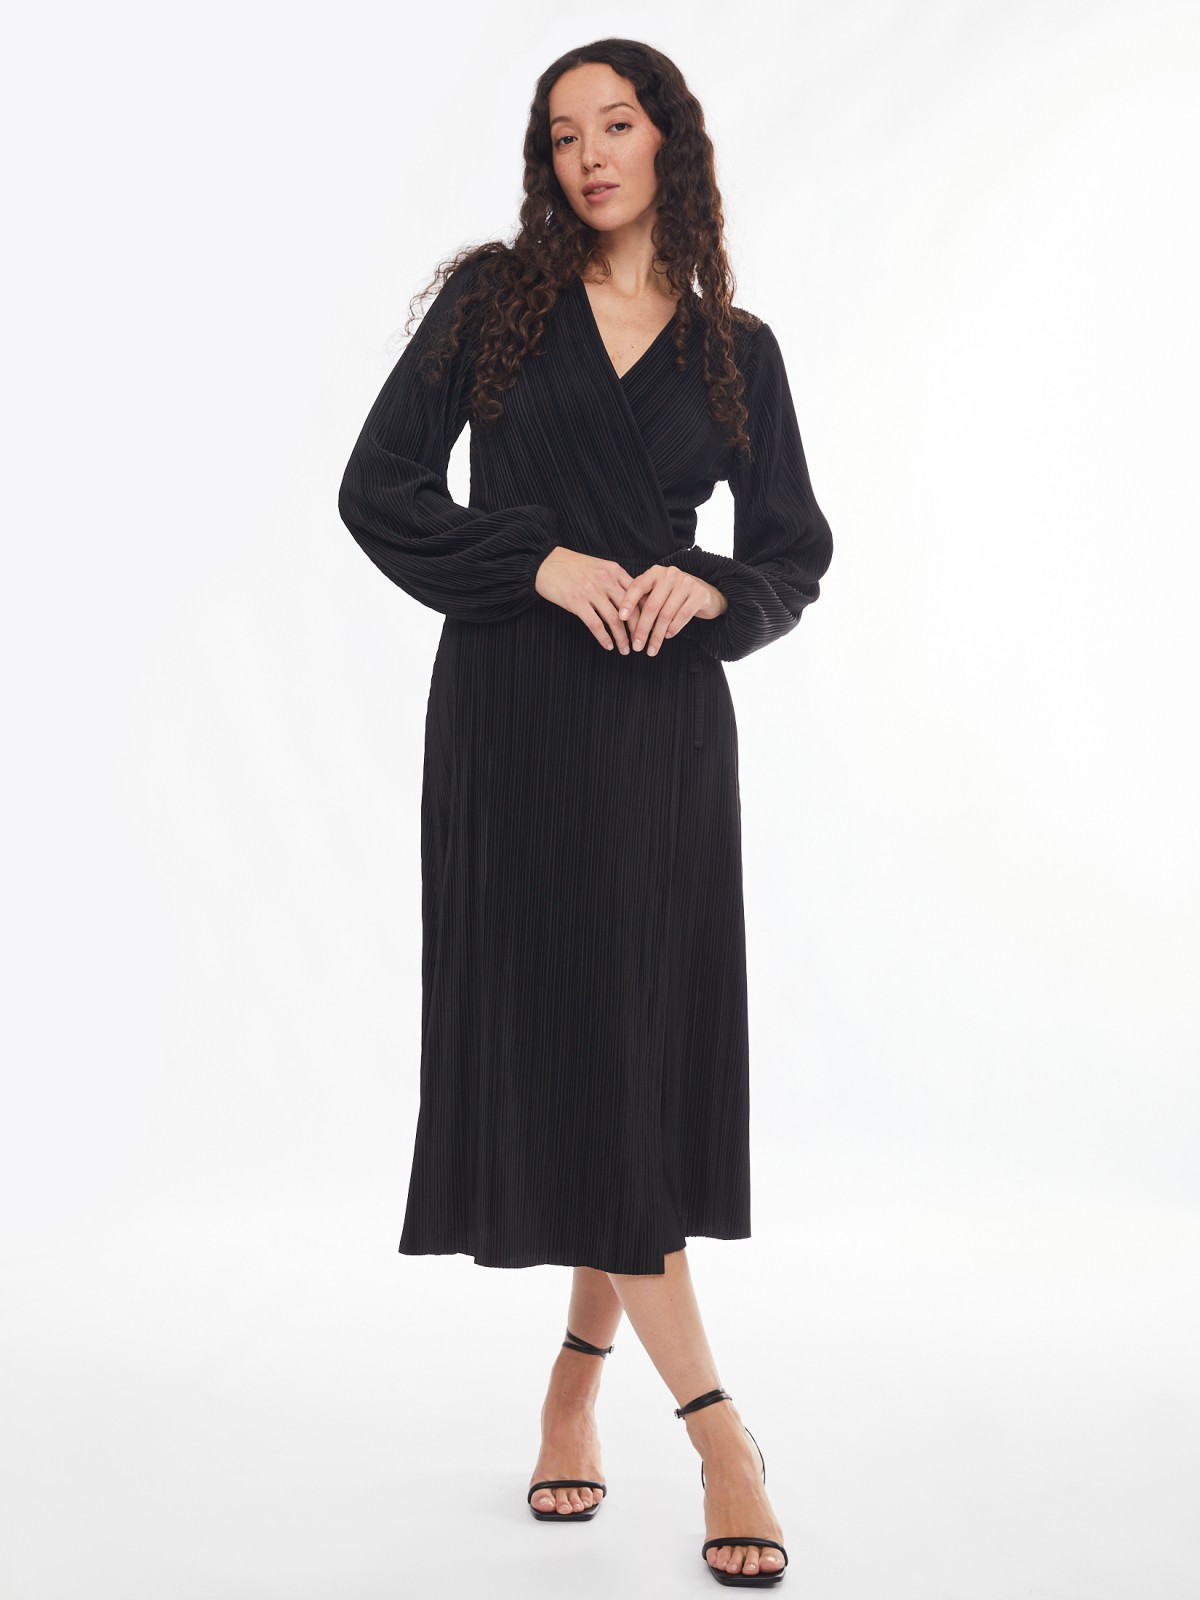 Приталенное платье-халат с запахом и фактурой гофре zolla 02413814Y111, цвет черный, размер XS